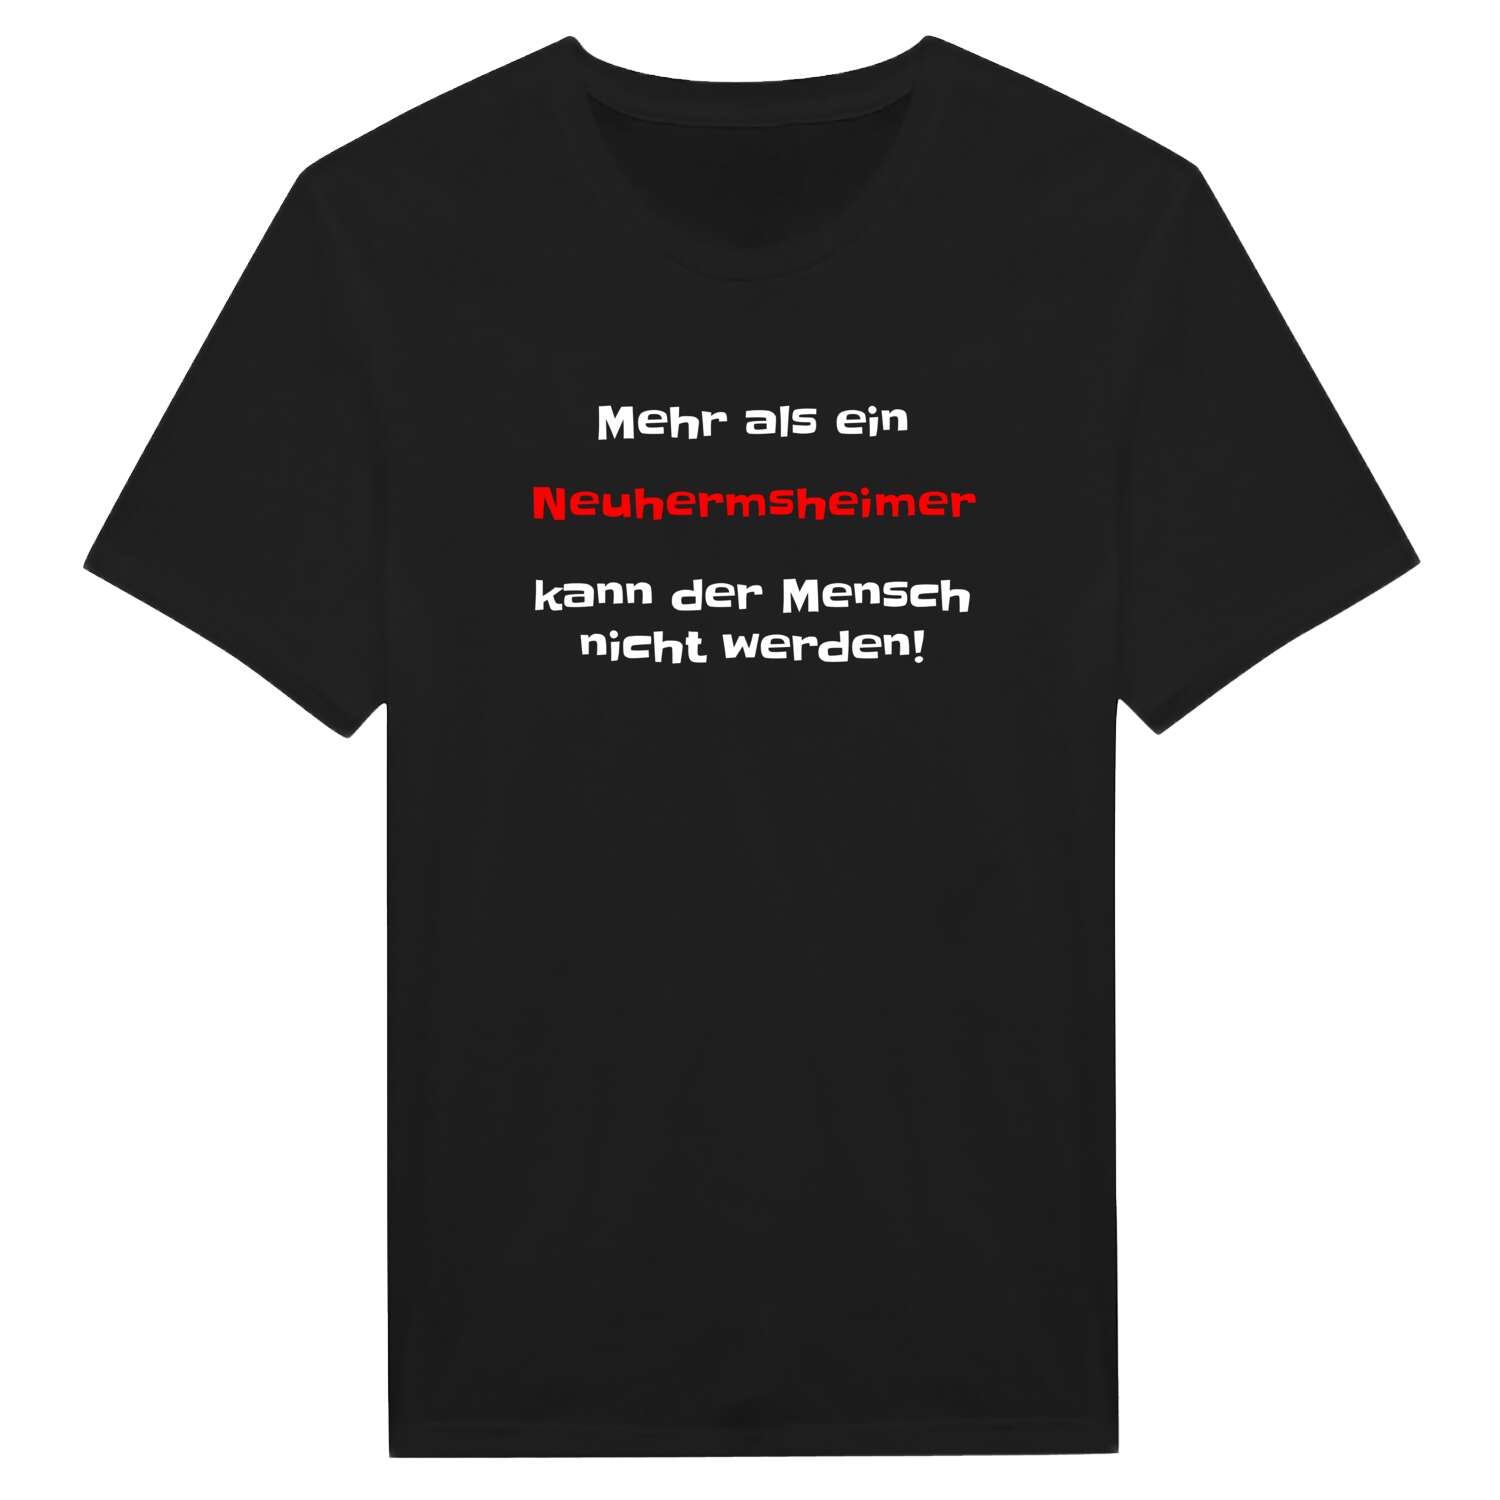 Neuhermsheim T-Shirt »Mehr als ein«